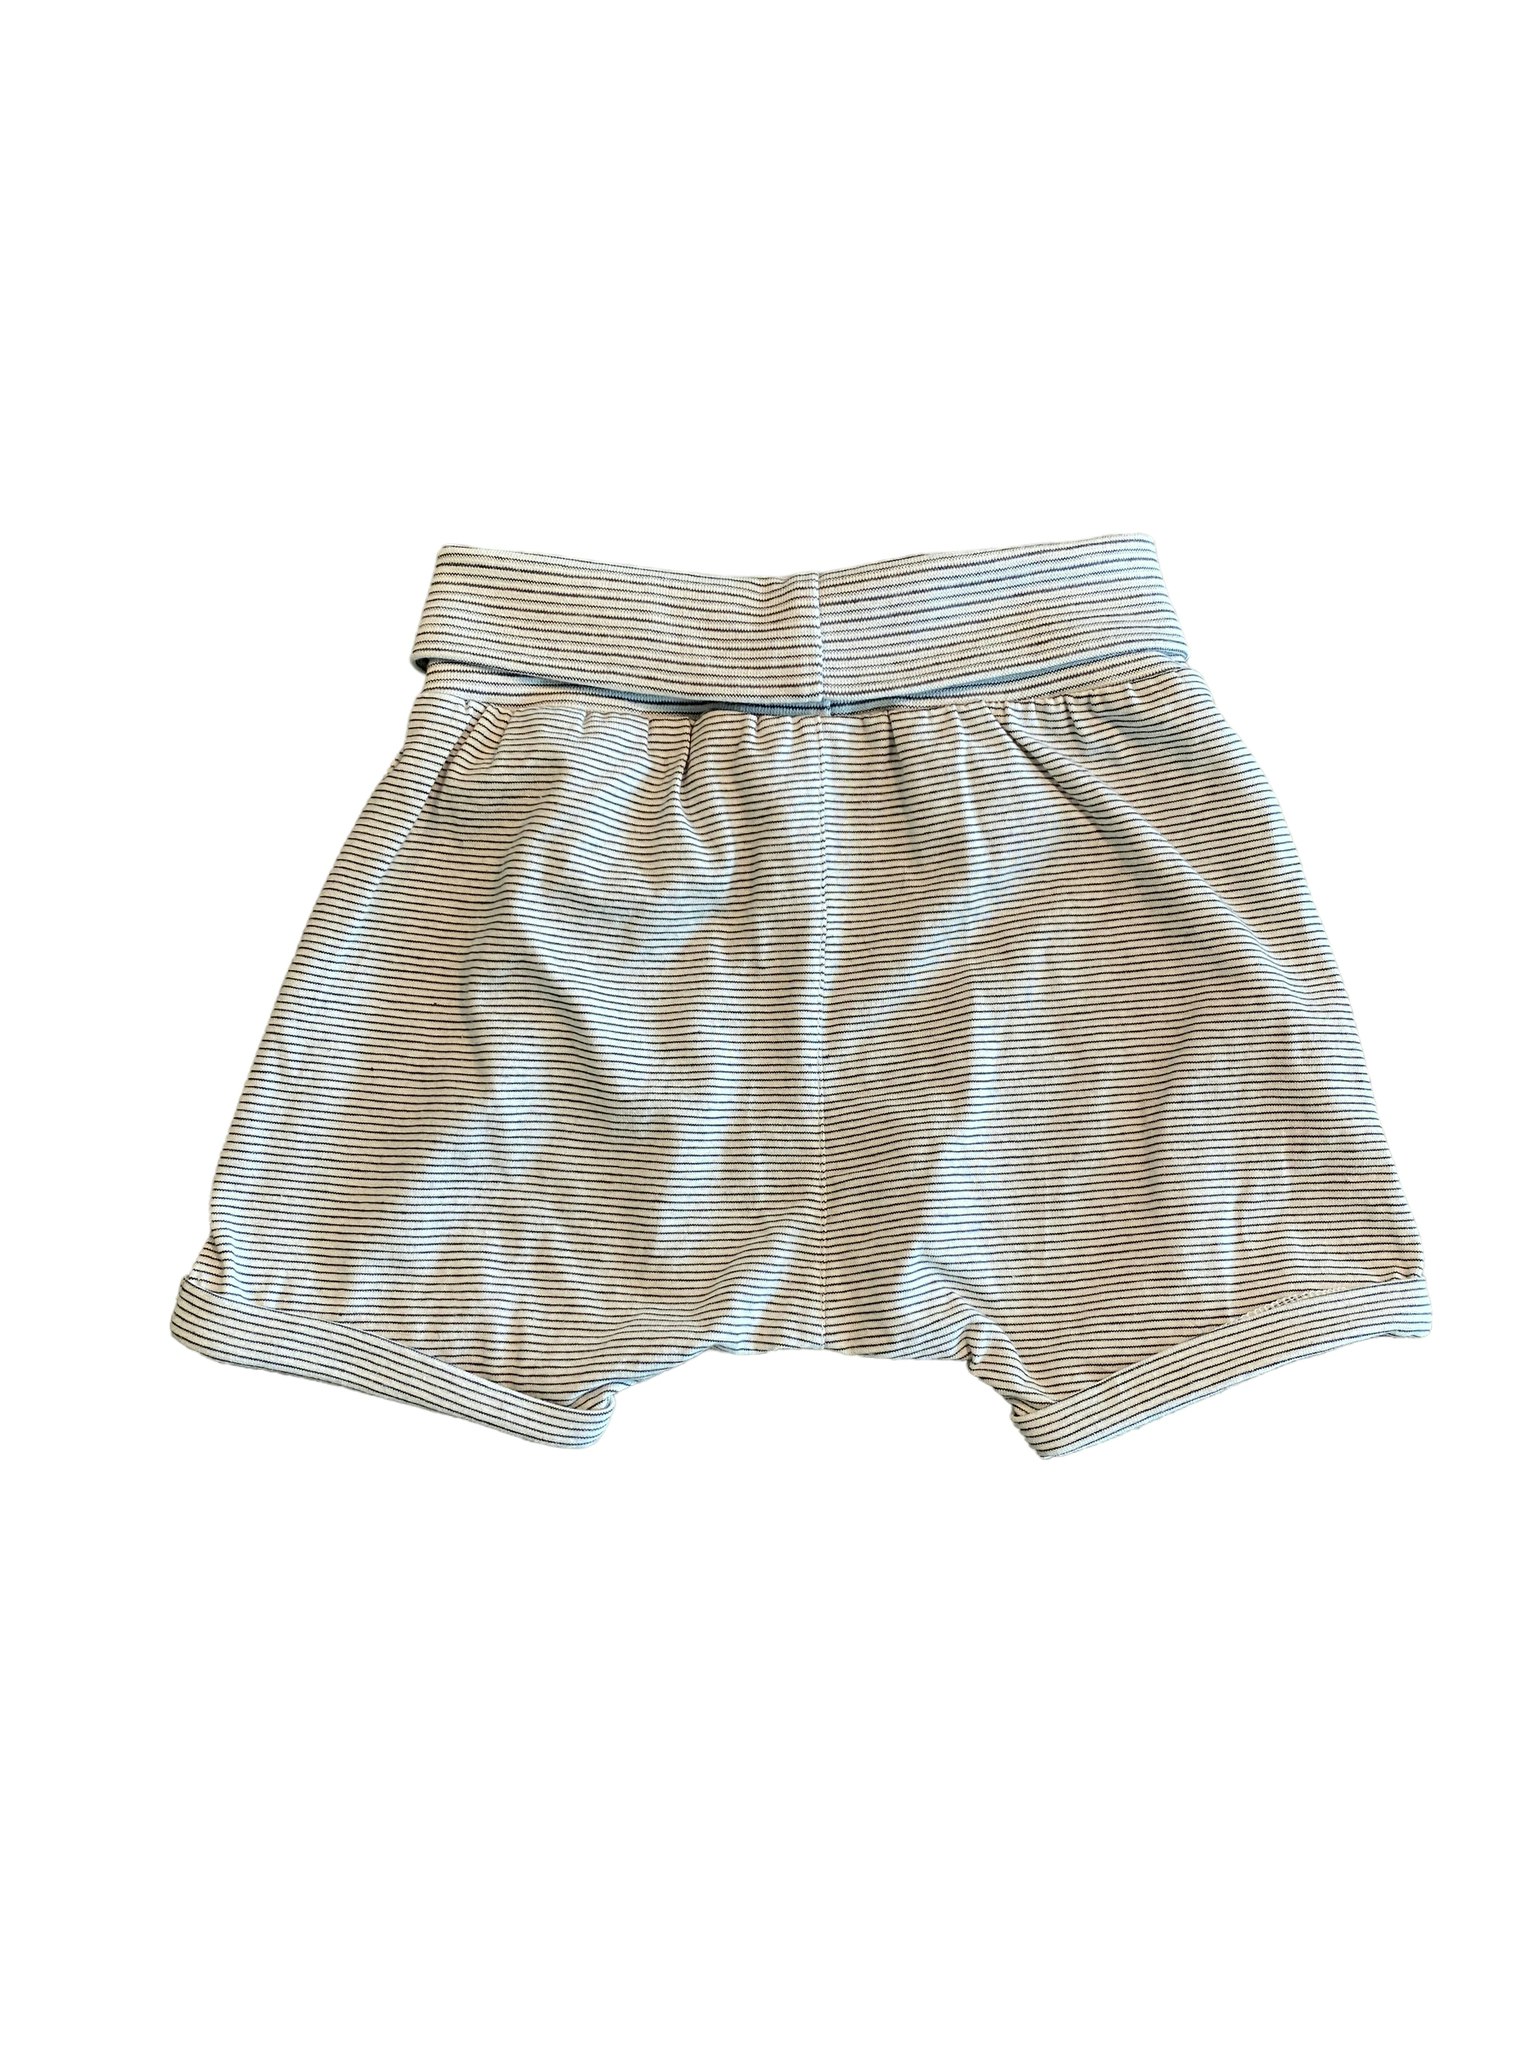 Randiga shorts, HM, stl 74